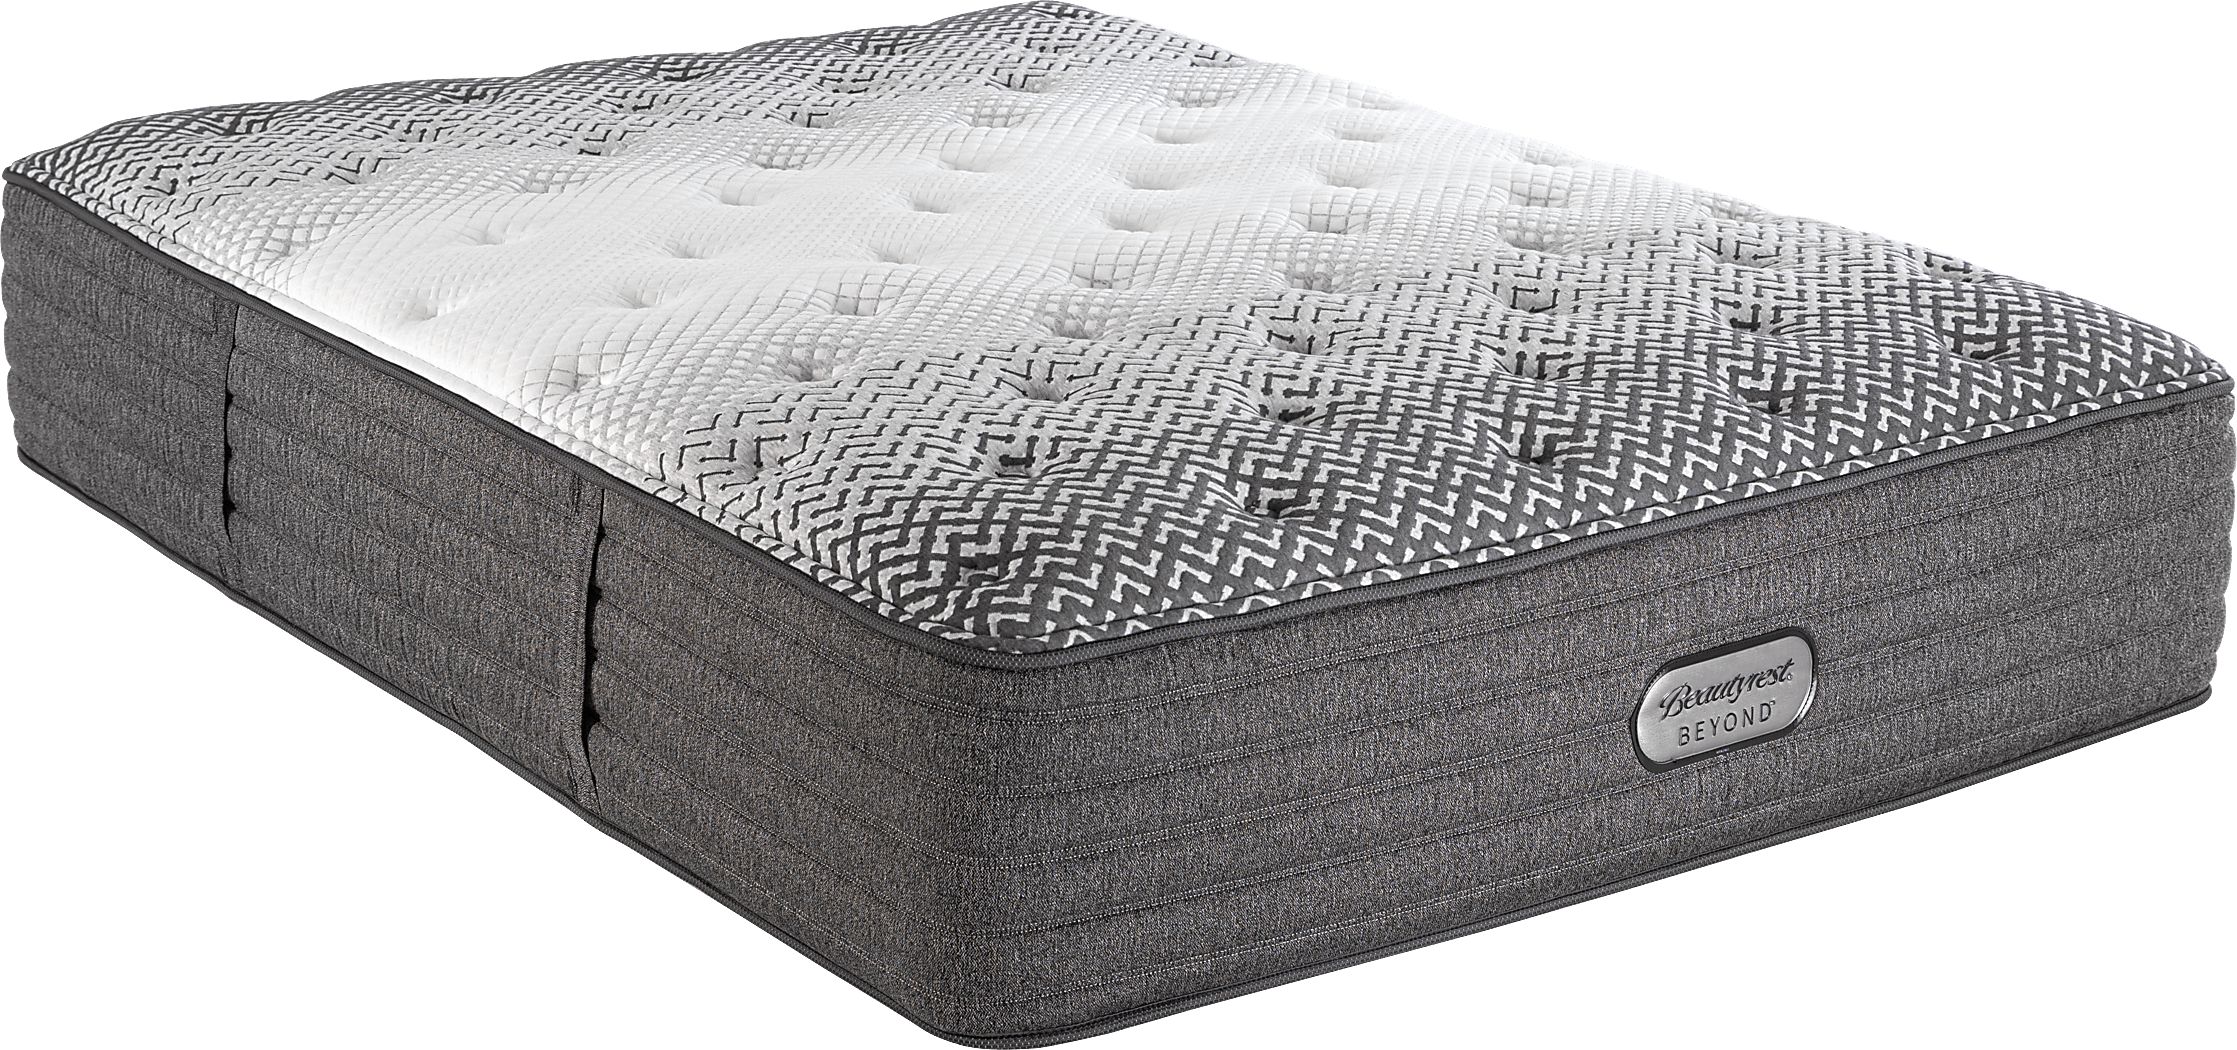 mattress firm beautyrest beyond medium